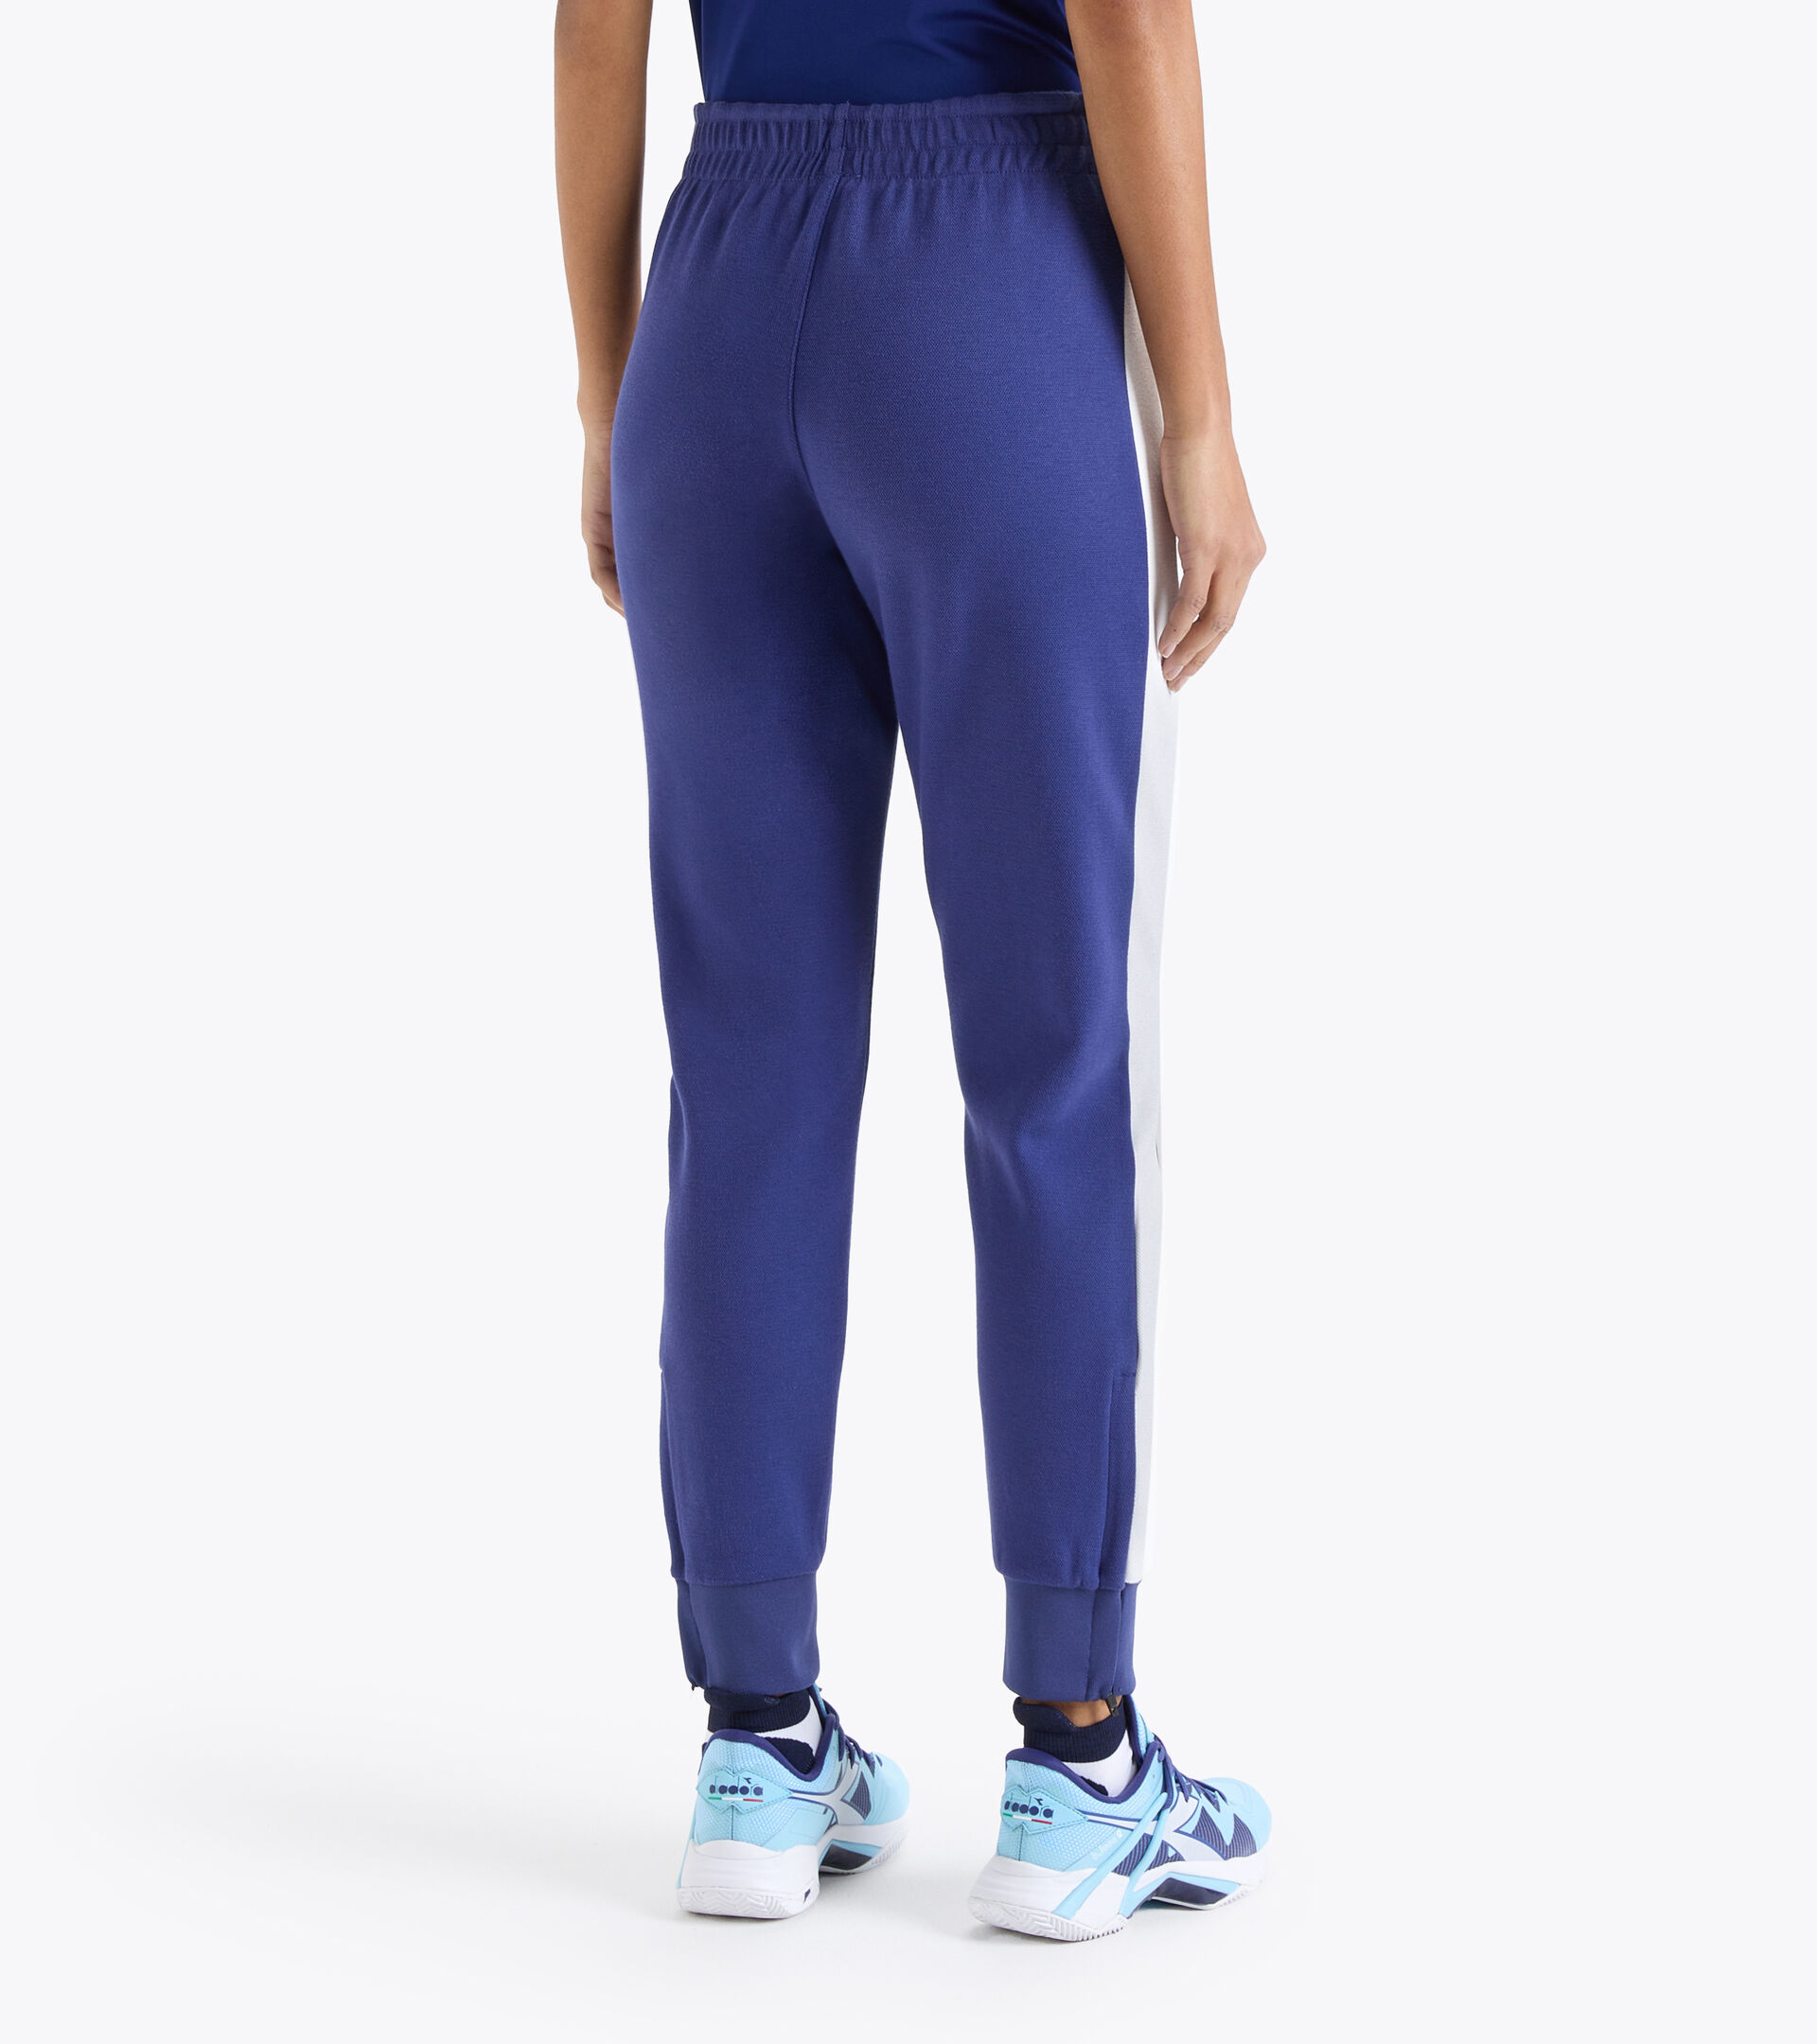 L. PANT COURT Tennis trousers - Women - Diadora Online Store US